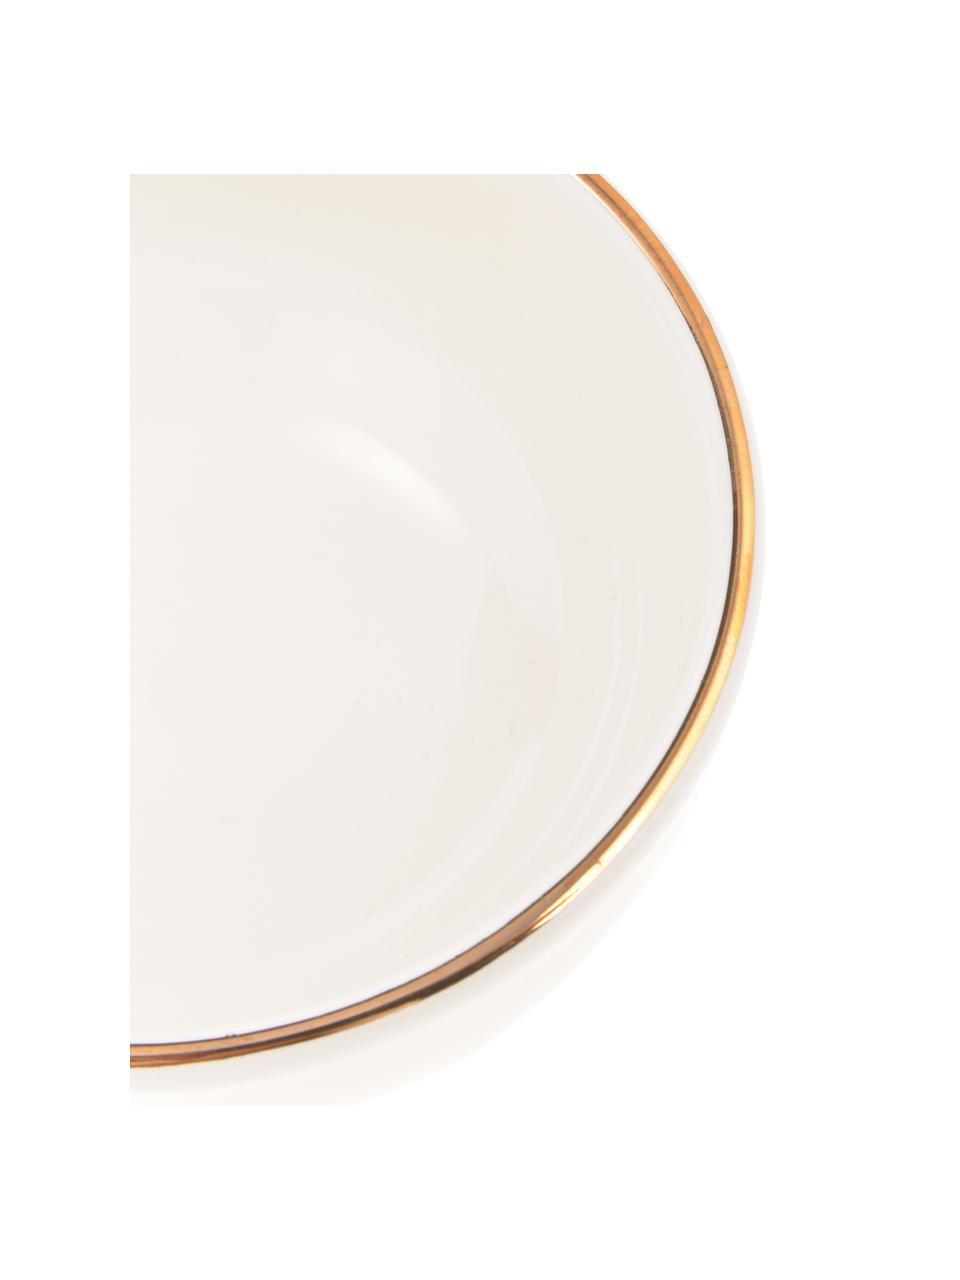 Ručně vyrobená miska na občerstvení se zlatým okrajem Allure, 4 ks, Keramika, Bílá, zlatá, Ø 11 cm